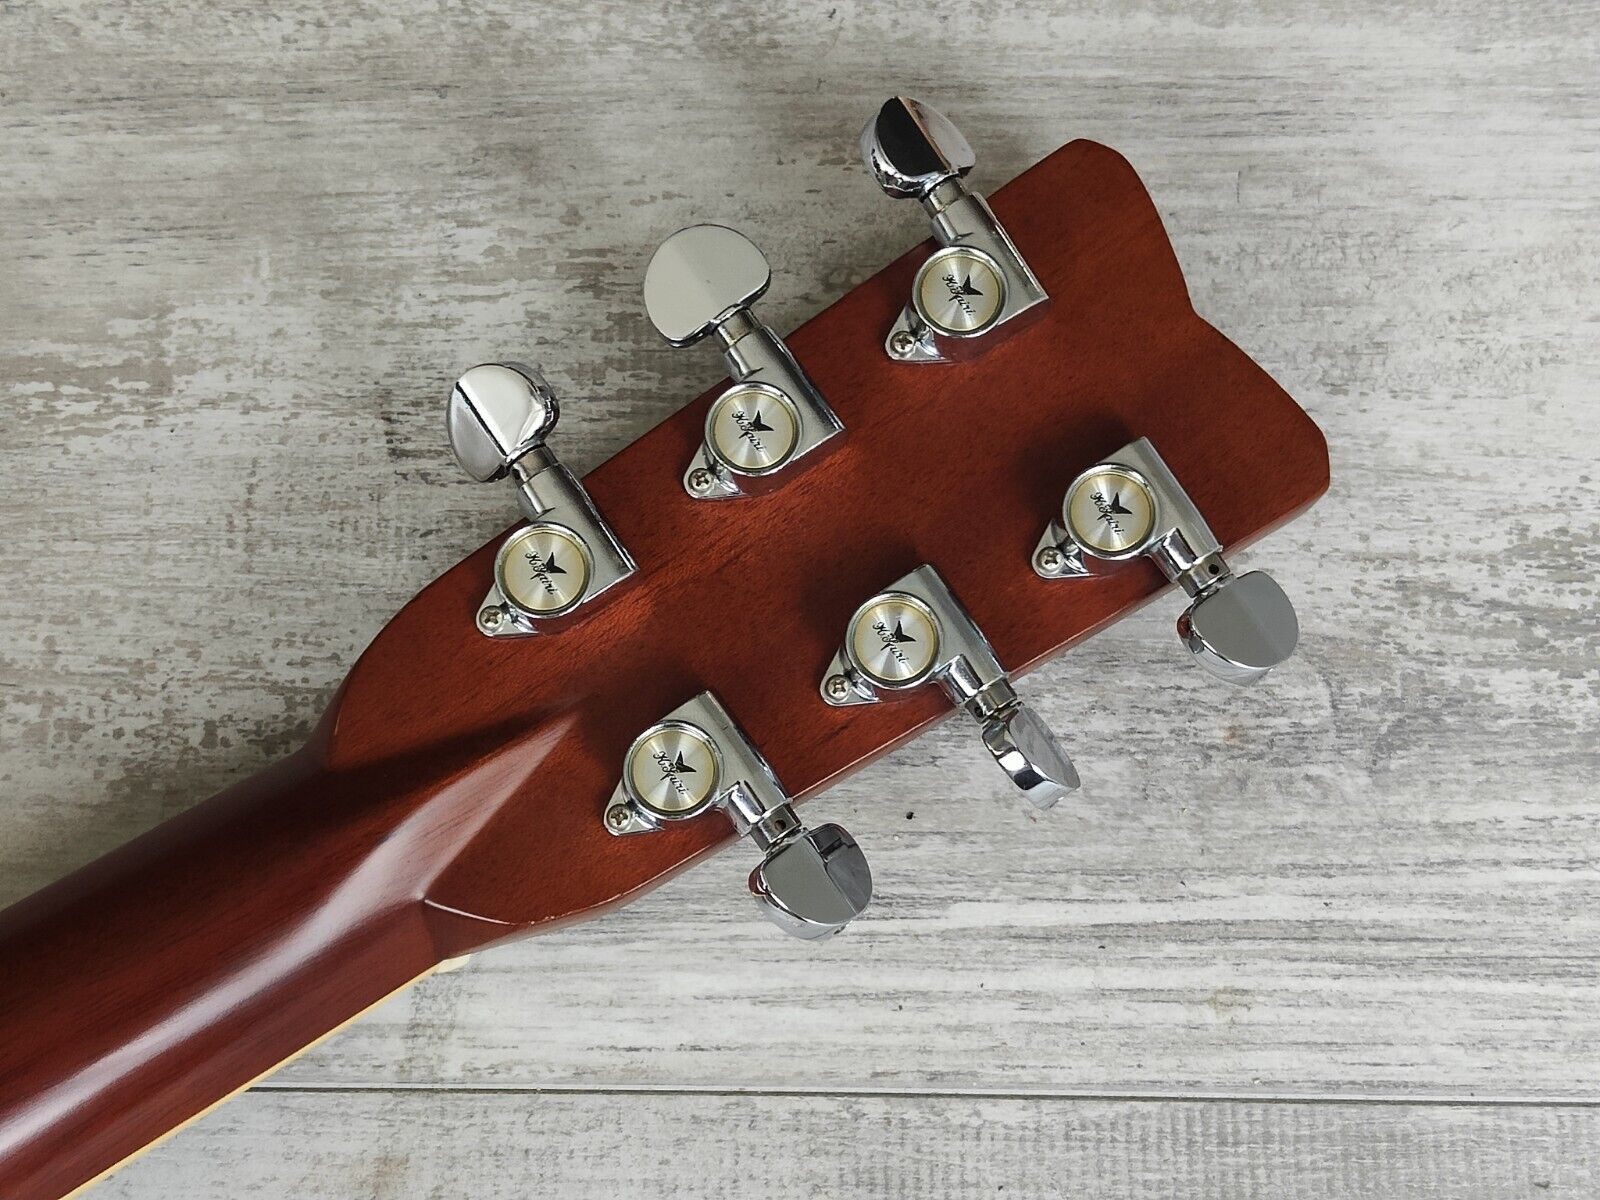 1979 K. Yairi Japan Leo-J2 Handmade Acoustic Guitar (Natural)